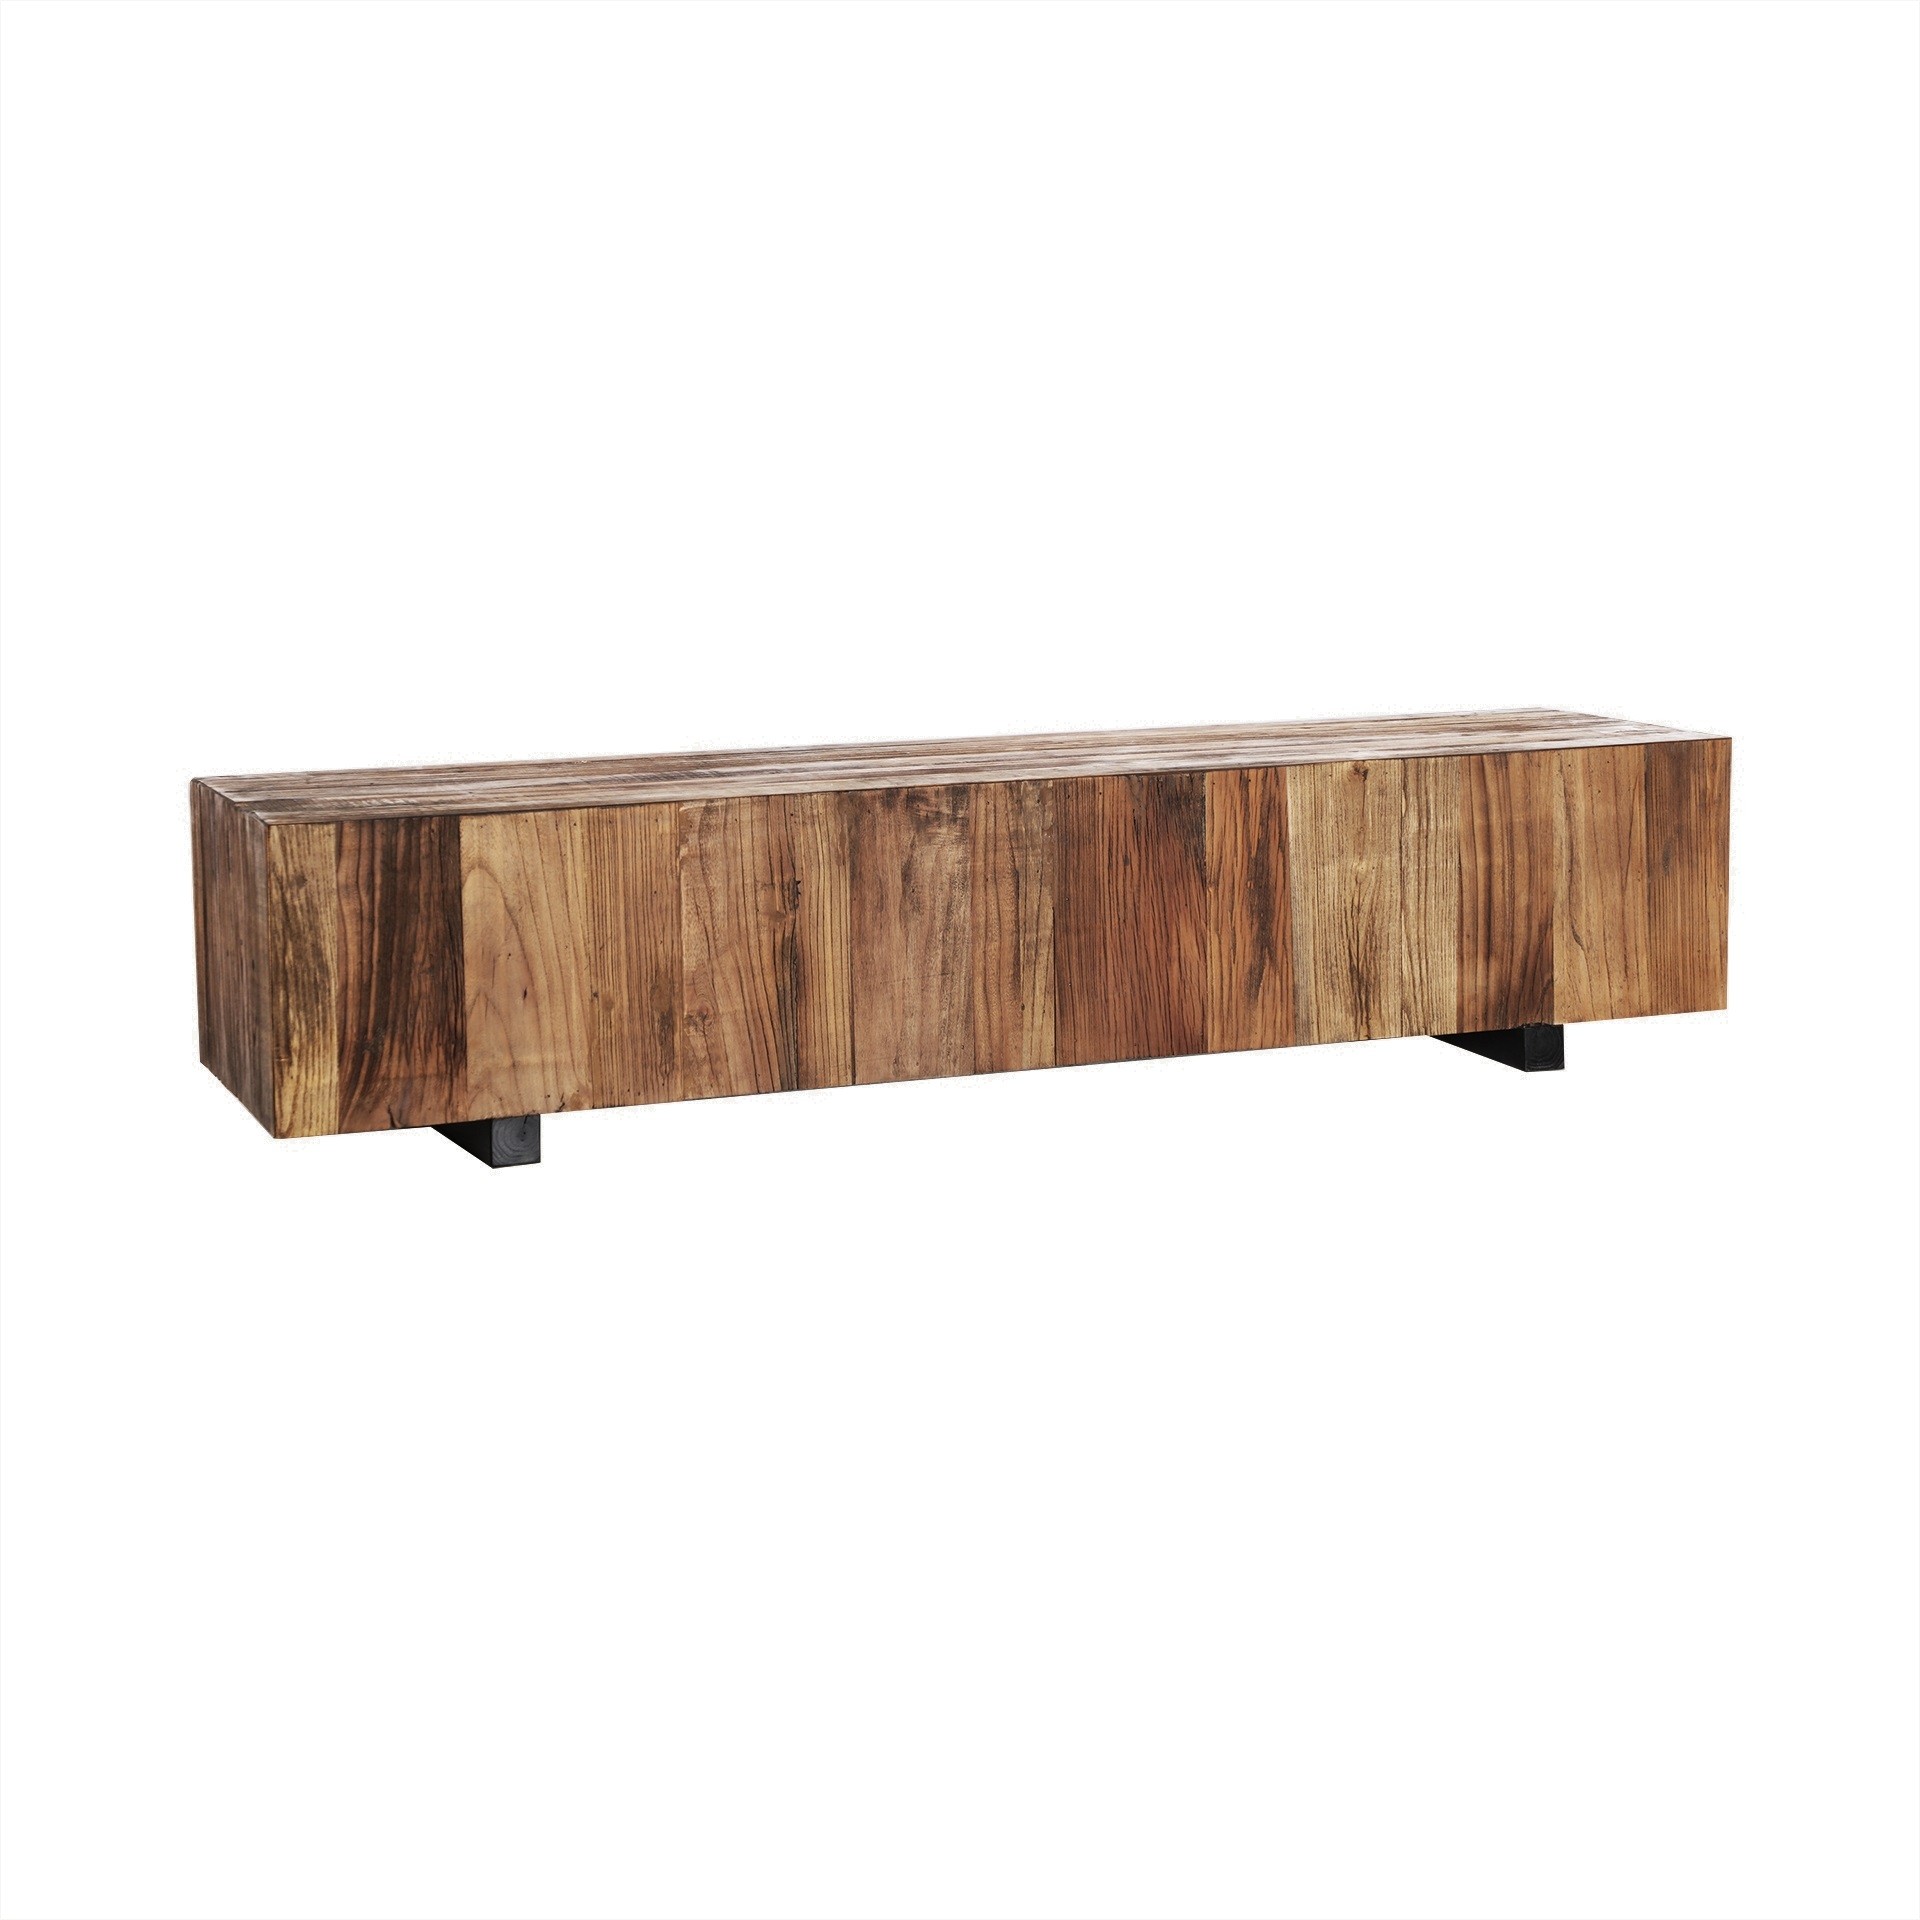 Estila Luxusní moderní konferenční stolek Elmond z bukového dřeva v hnědých přírodních odstínech s kresbou letokruhů 160 cm